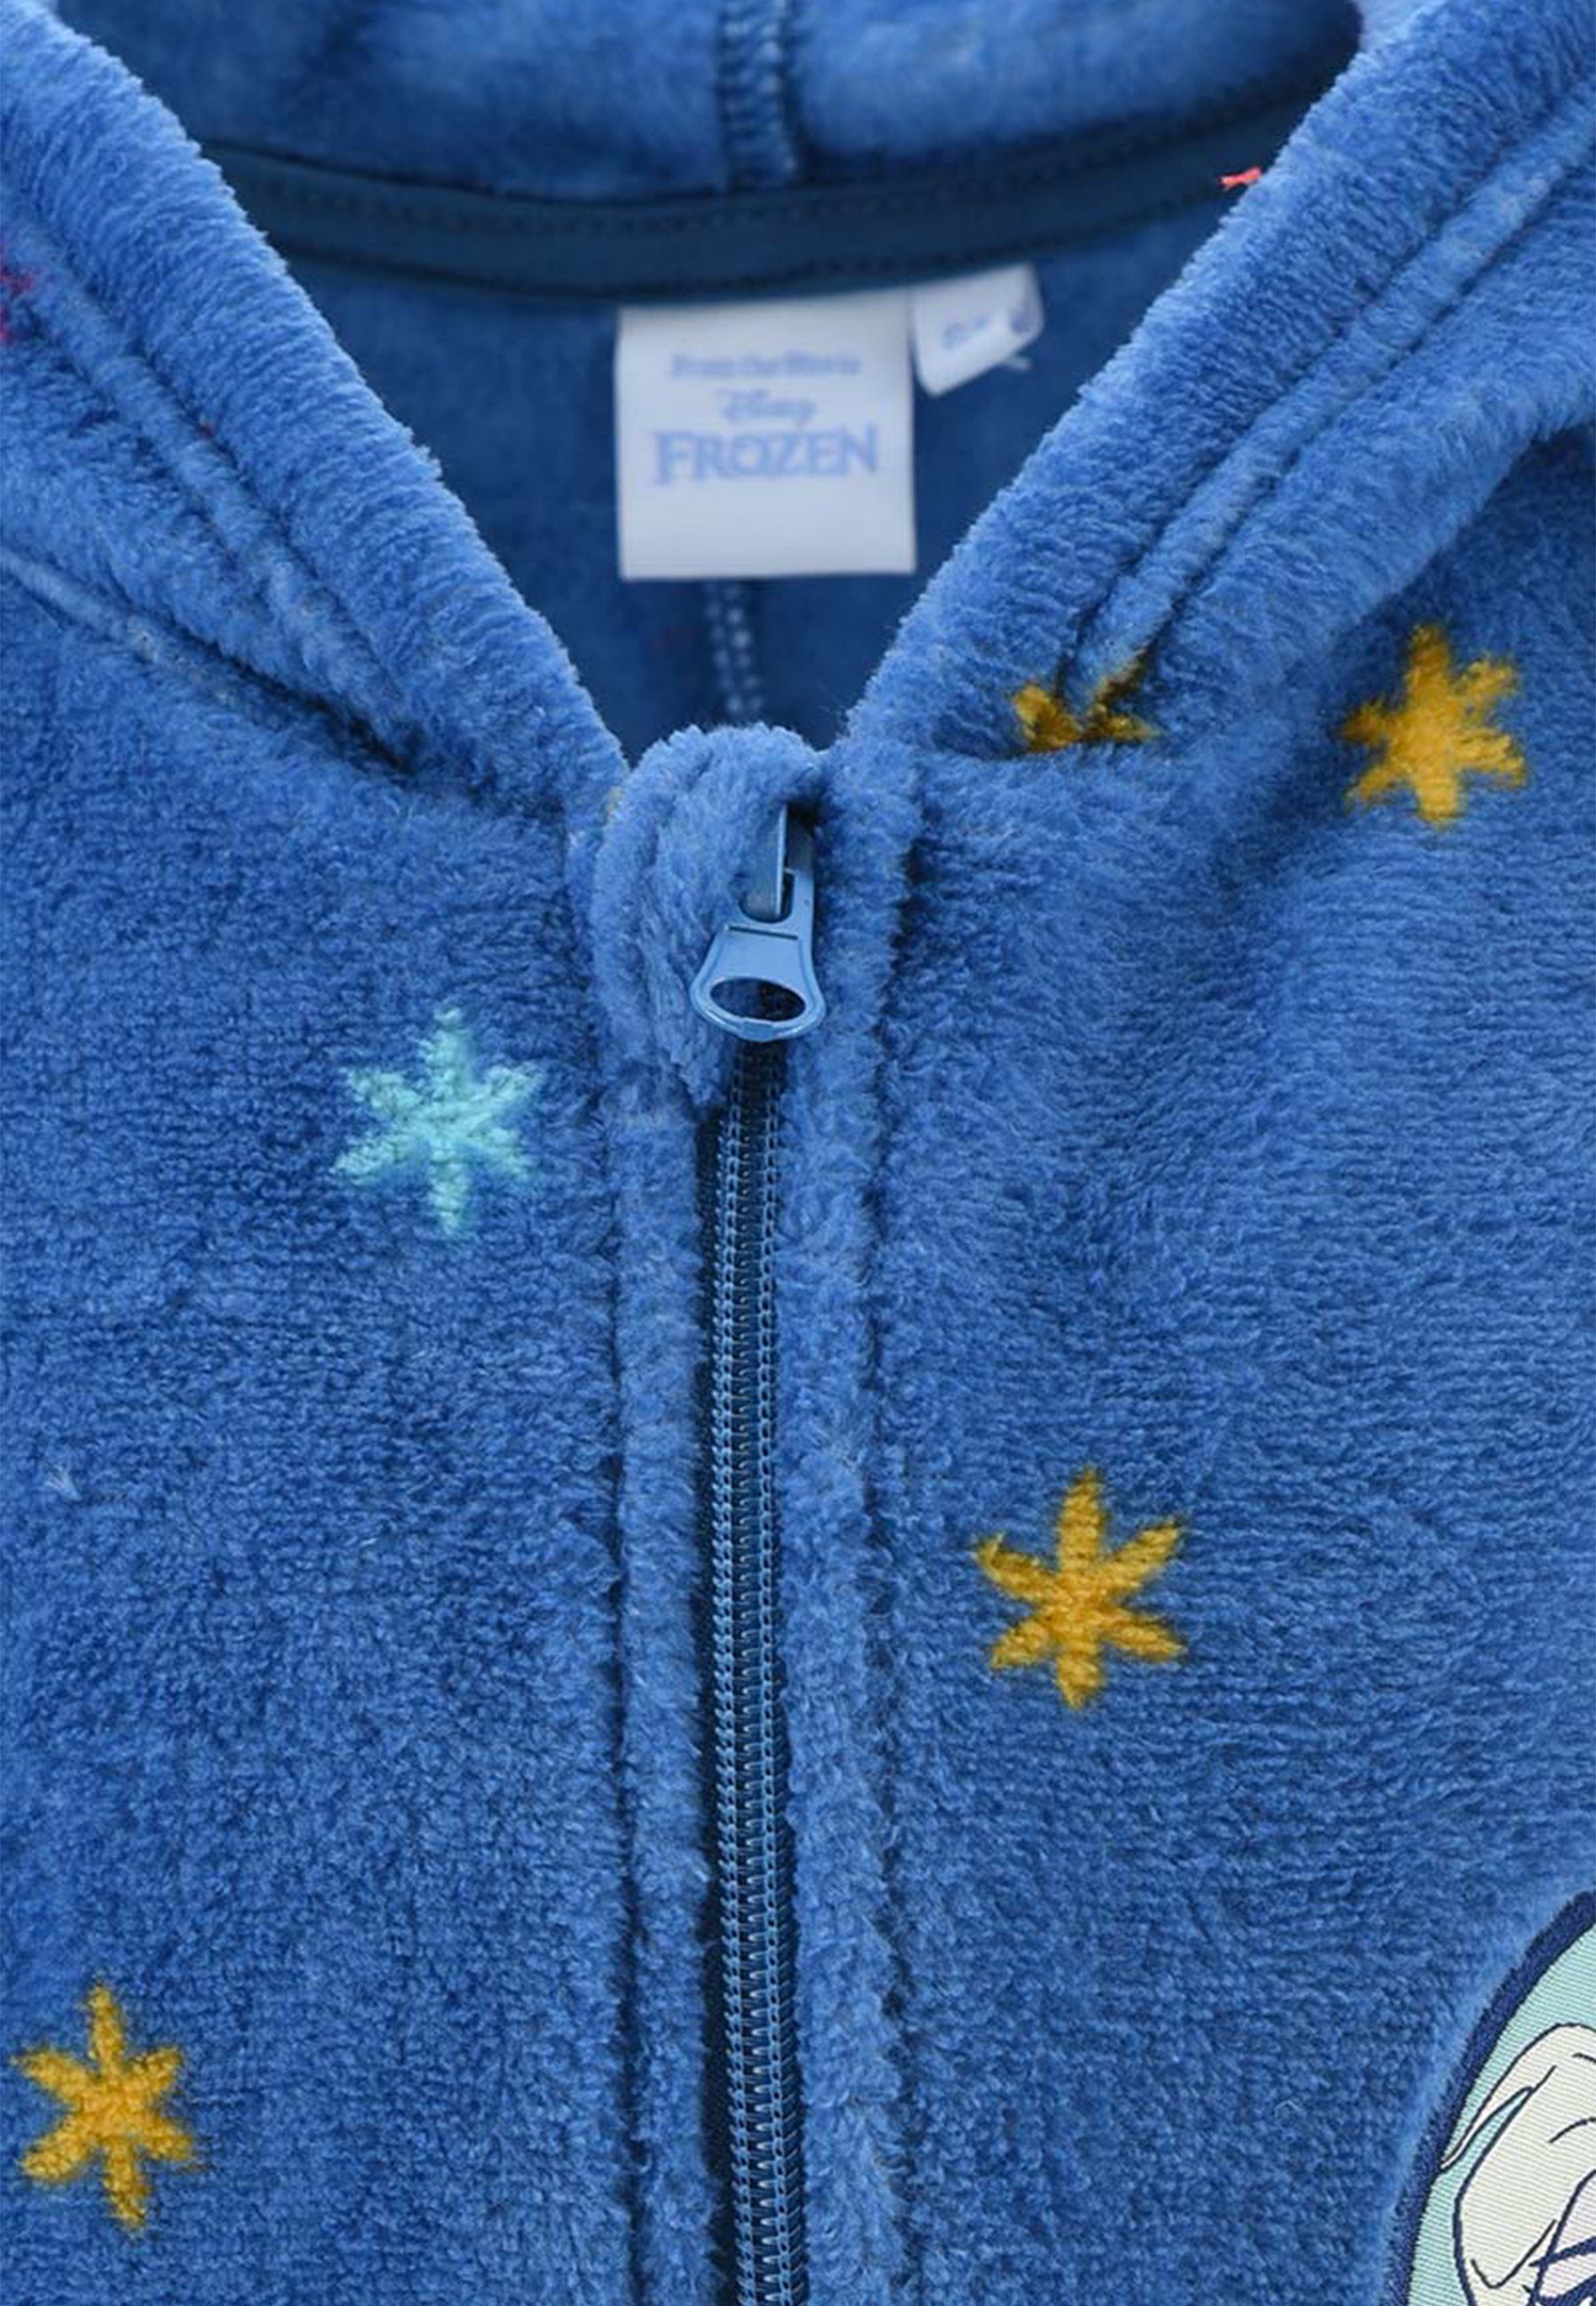 Pyjama langarm Nachtwäsche Schlafanzug Schlaf Disney Elsa Frozen Overall